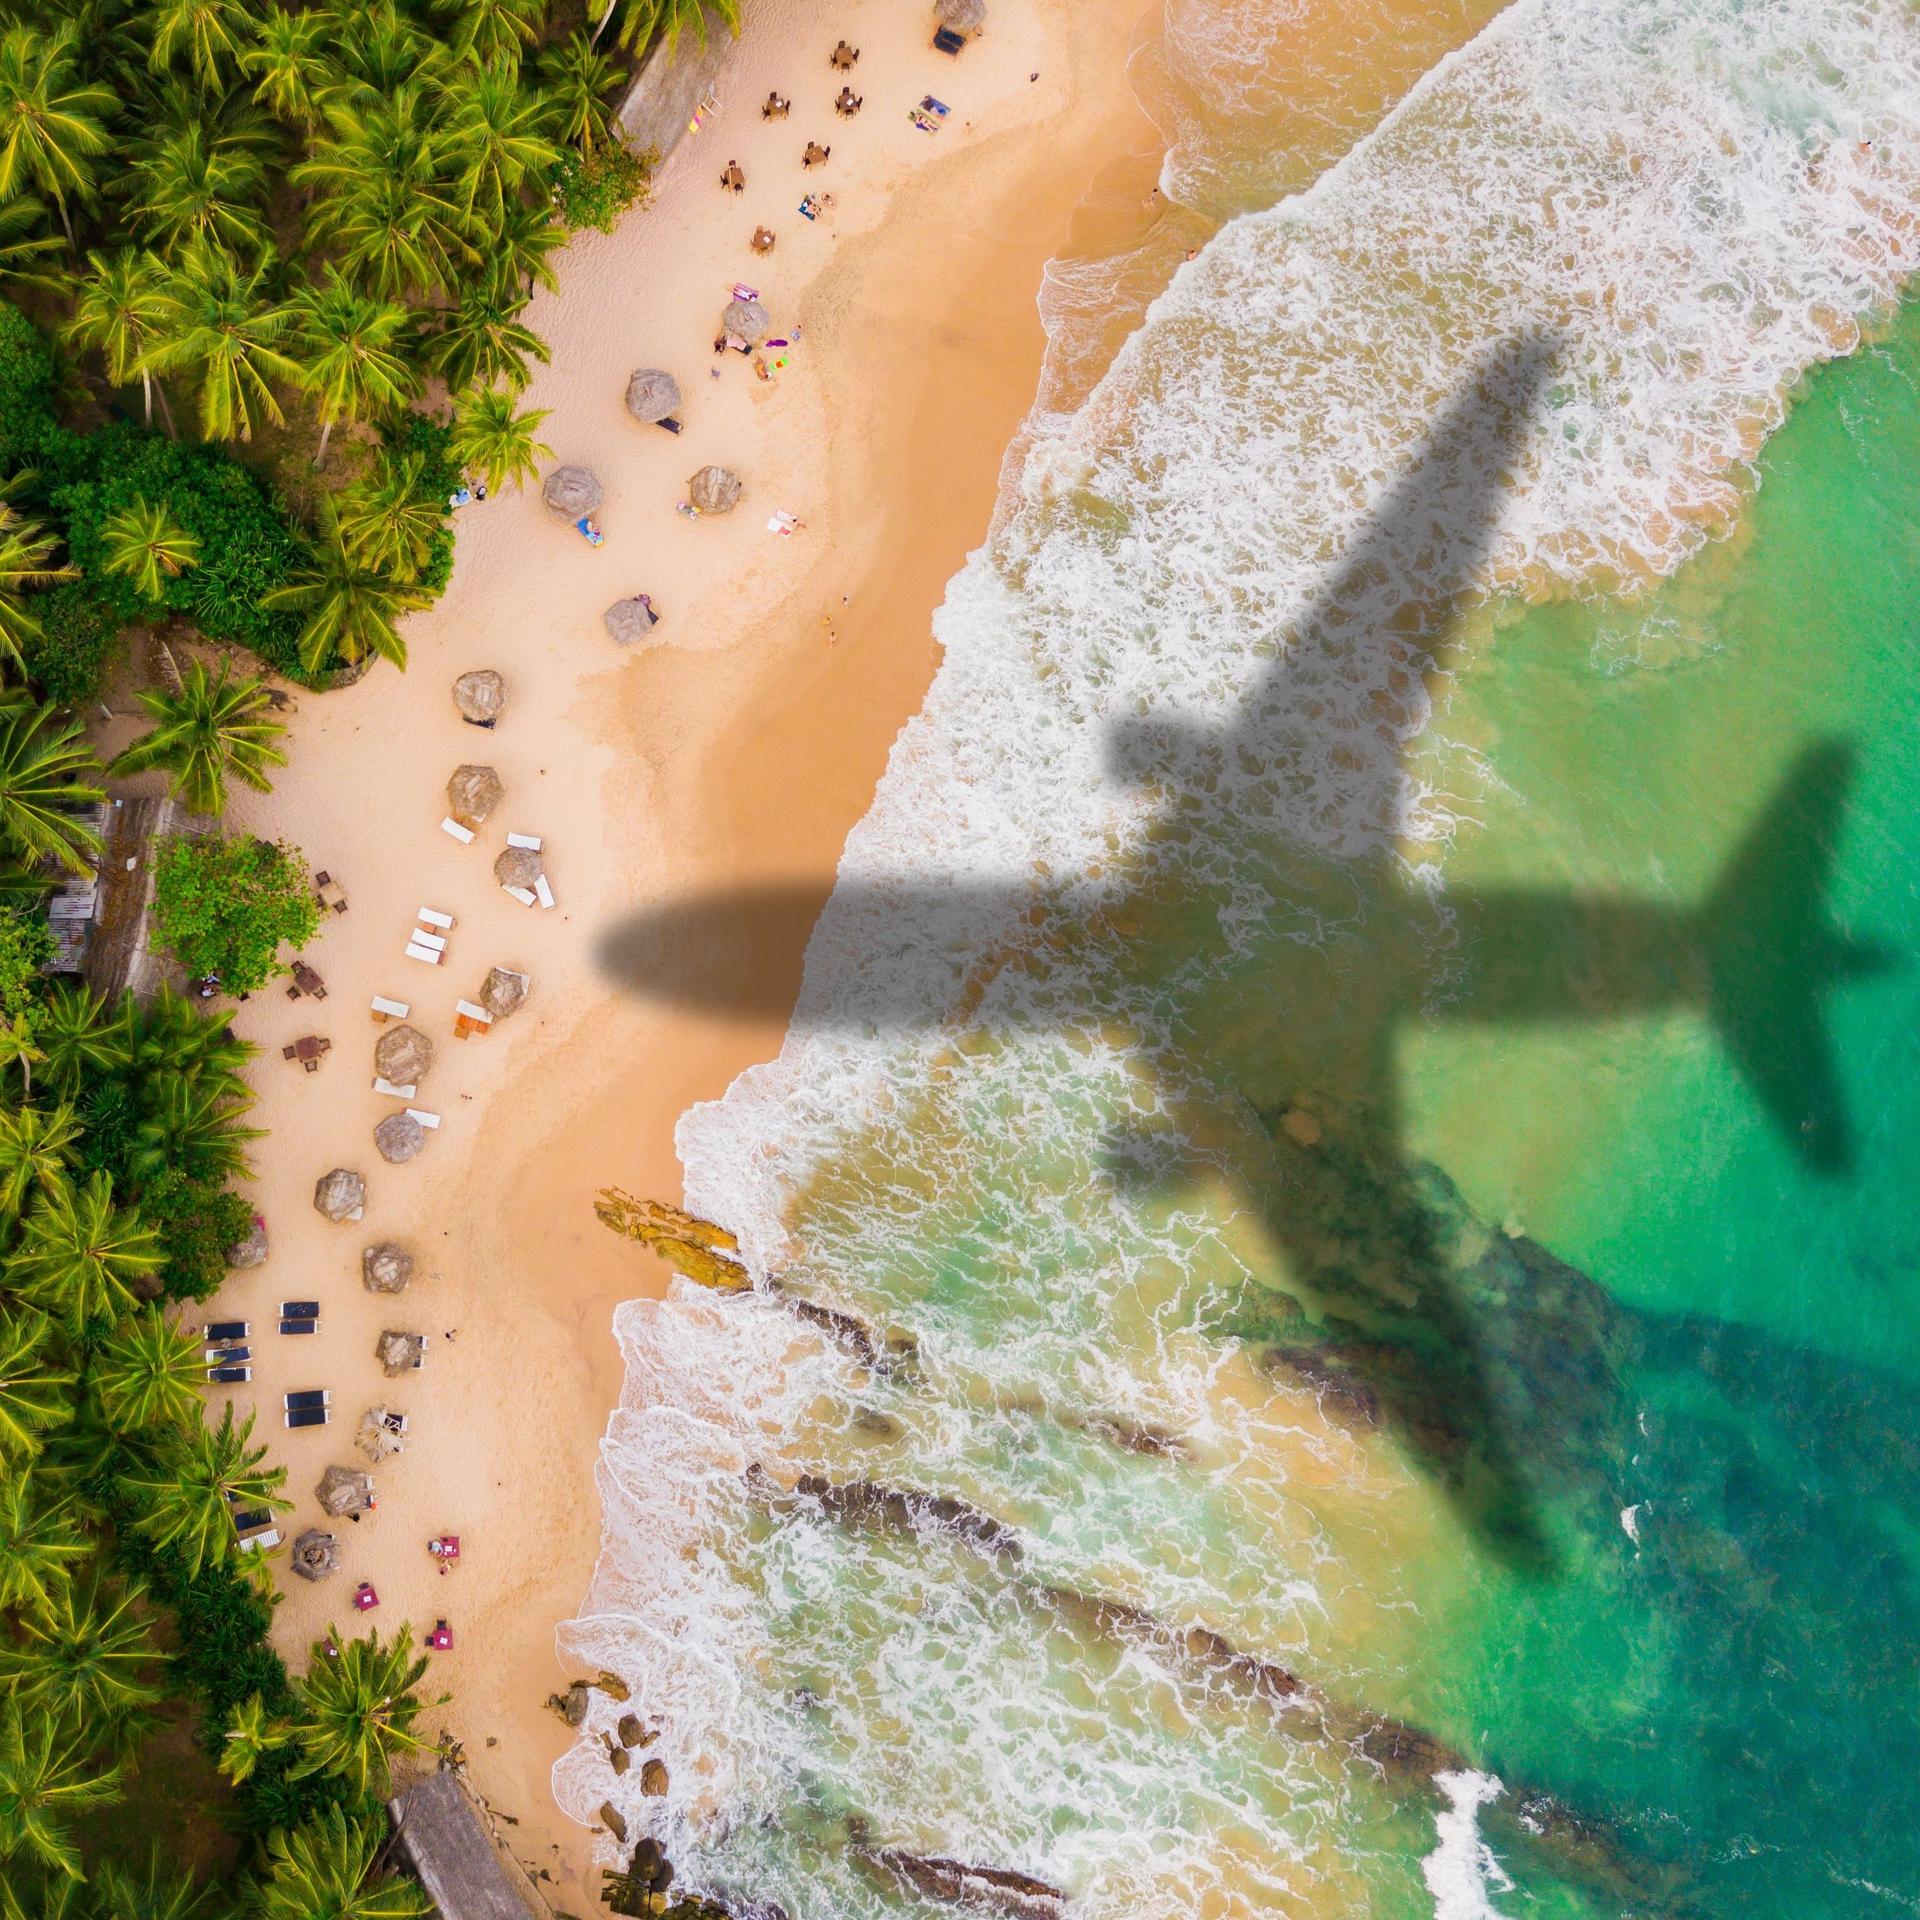 Ein Flugzeug fliegt über einen karibischen Strand. Man sieht nur den Schatten des Flugzeugs auf dem Strand.